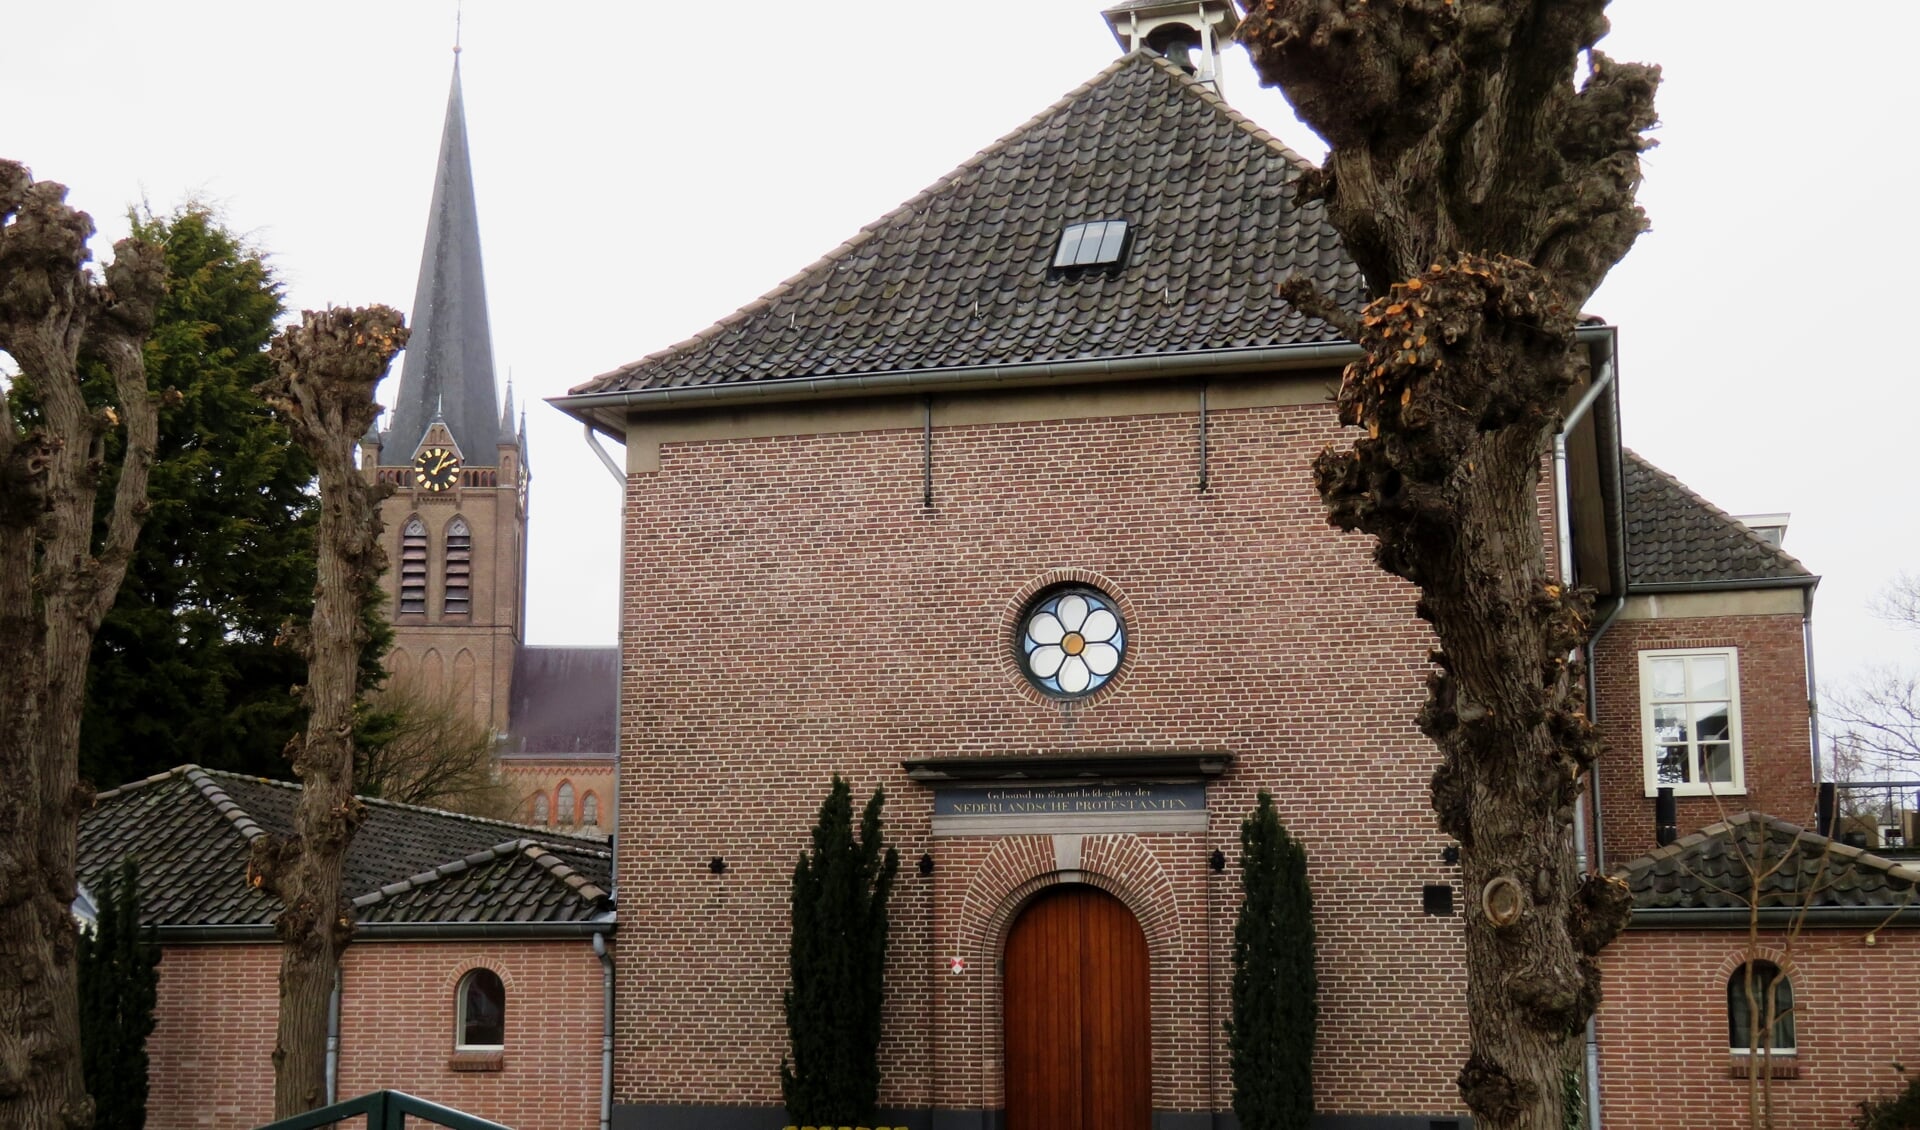 Protestantse kerk in Beuningen met de RK kerk op de achtergrond